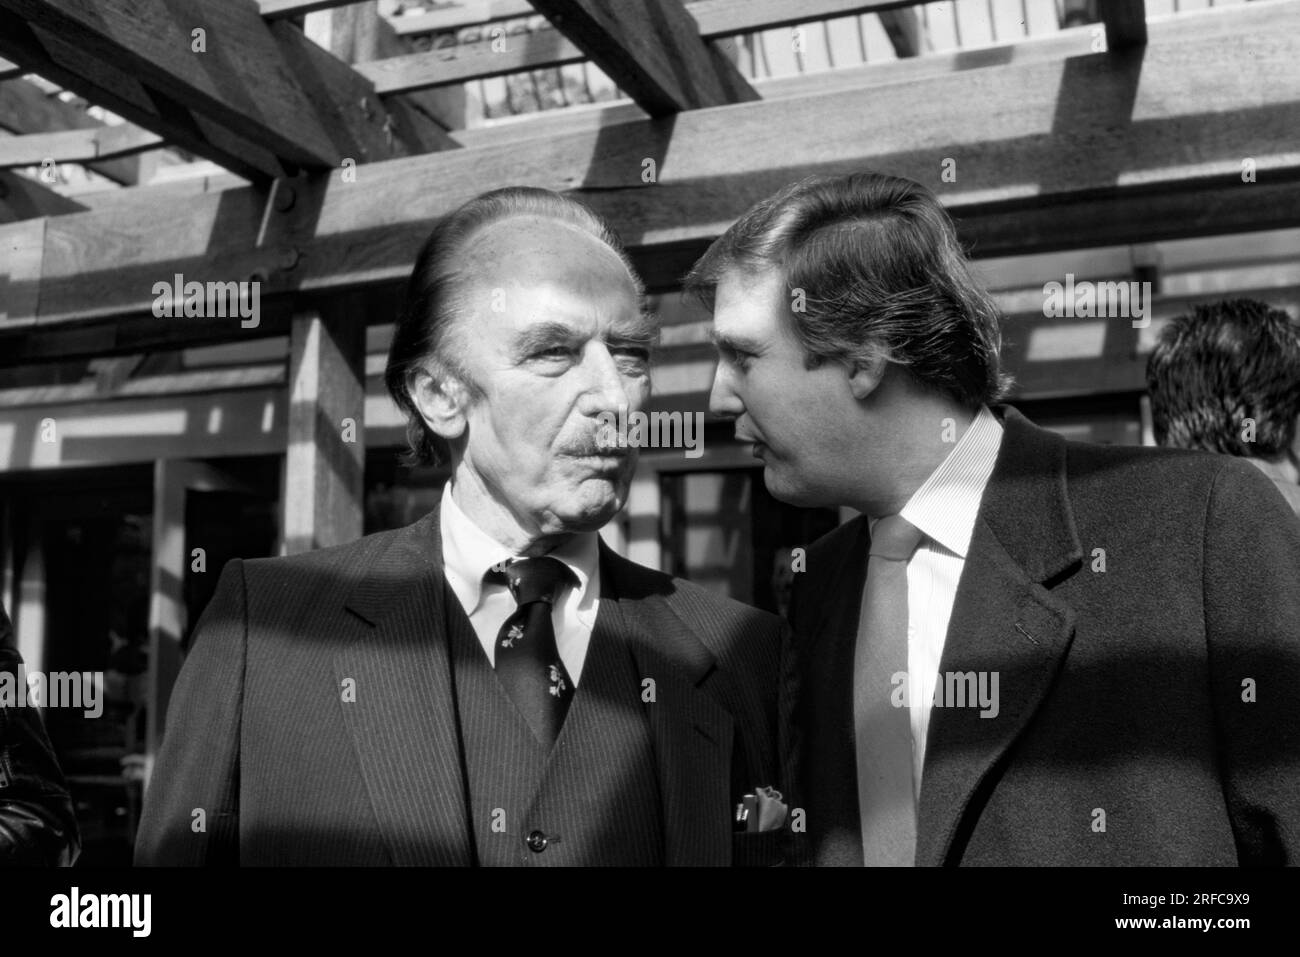 Fred Trump e figlio, Donald Trump 1980. A partire dal 1968, Trump è stato impiegato presso la società immobiliare di suo padre Fred, la Trump Management, che possedeva abitazioni in affitto di classe media nei quartieri esterni di New York. Foto di Bernard Gotfryd Foto Stock